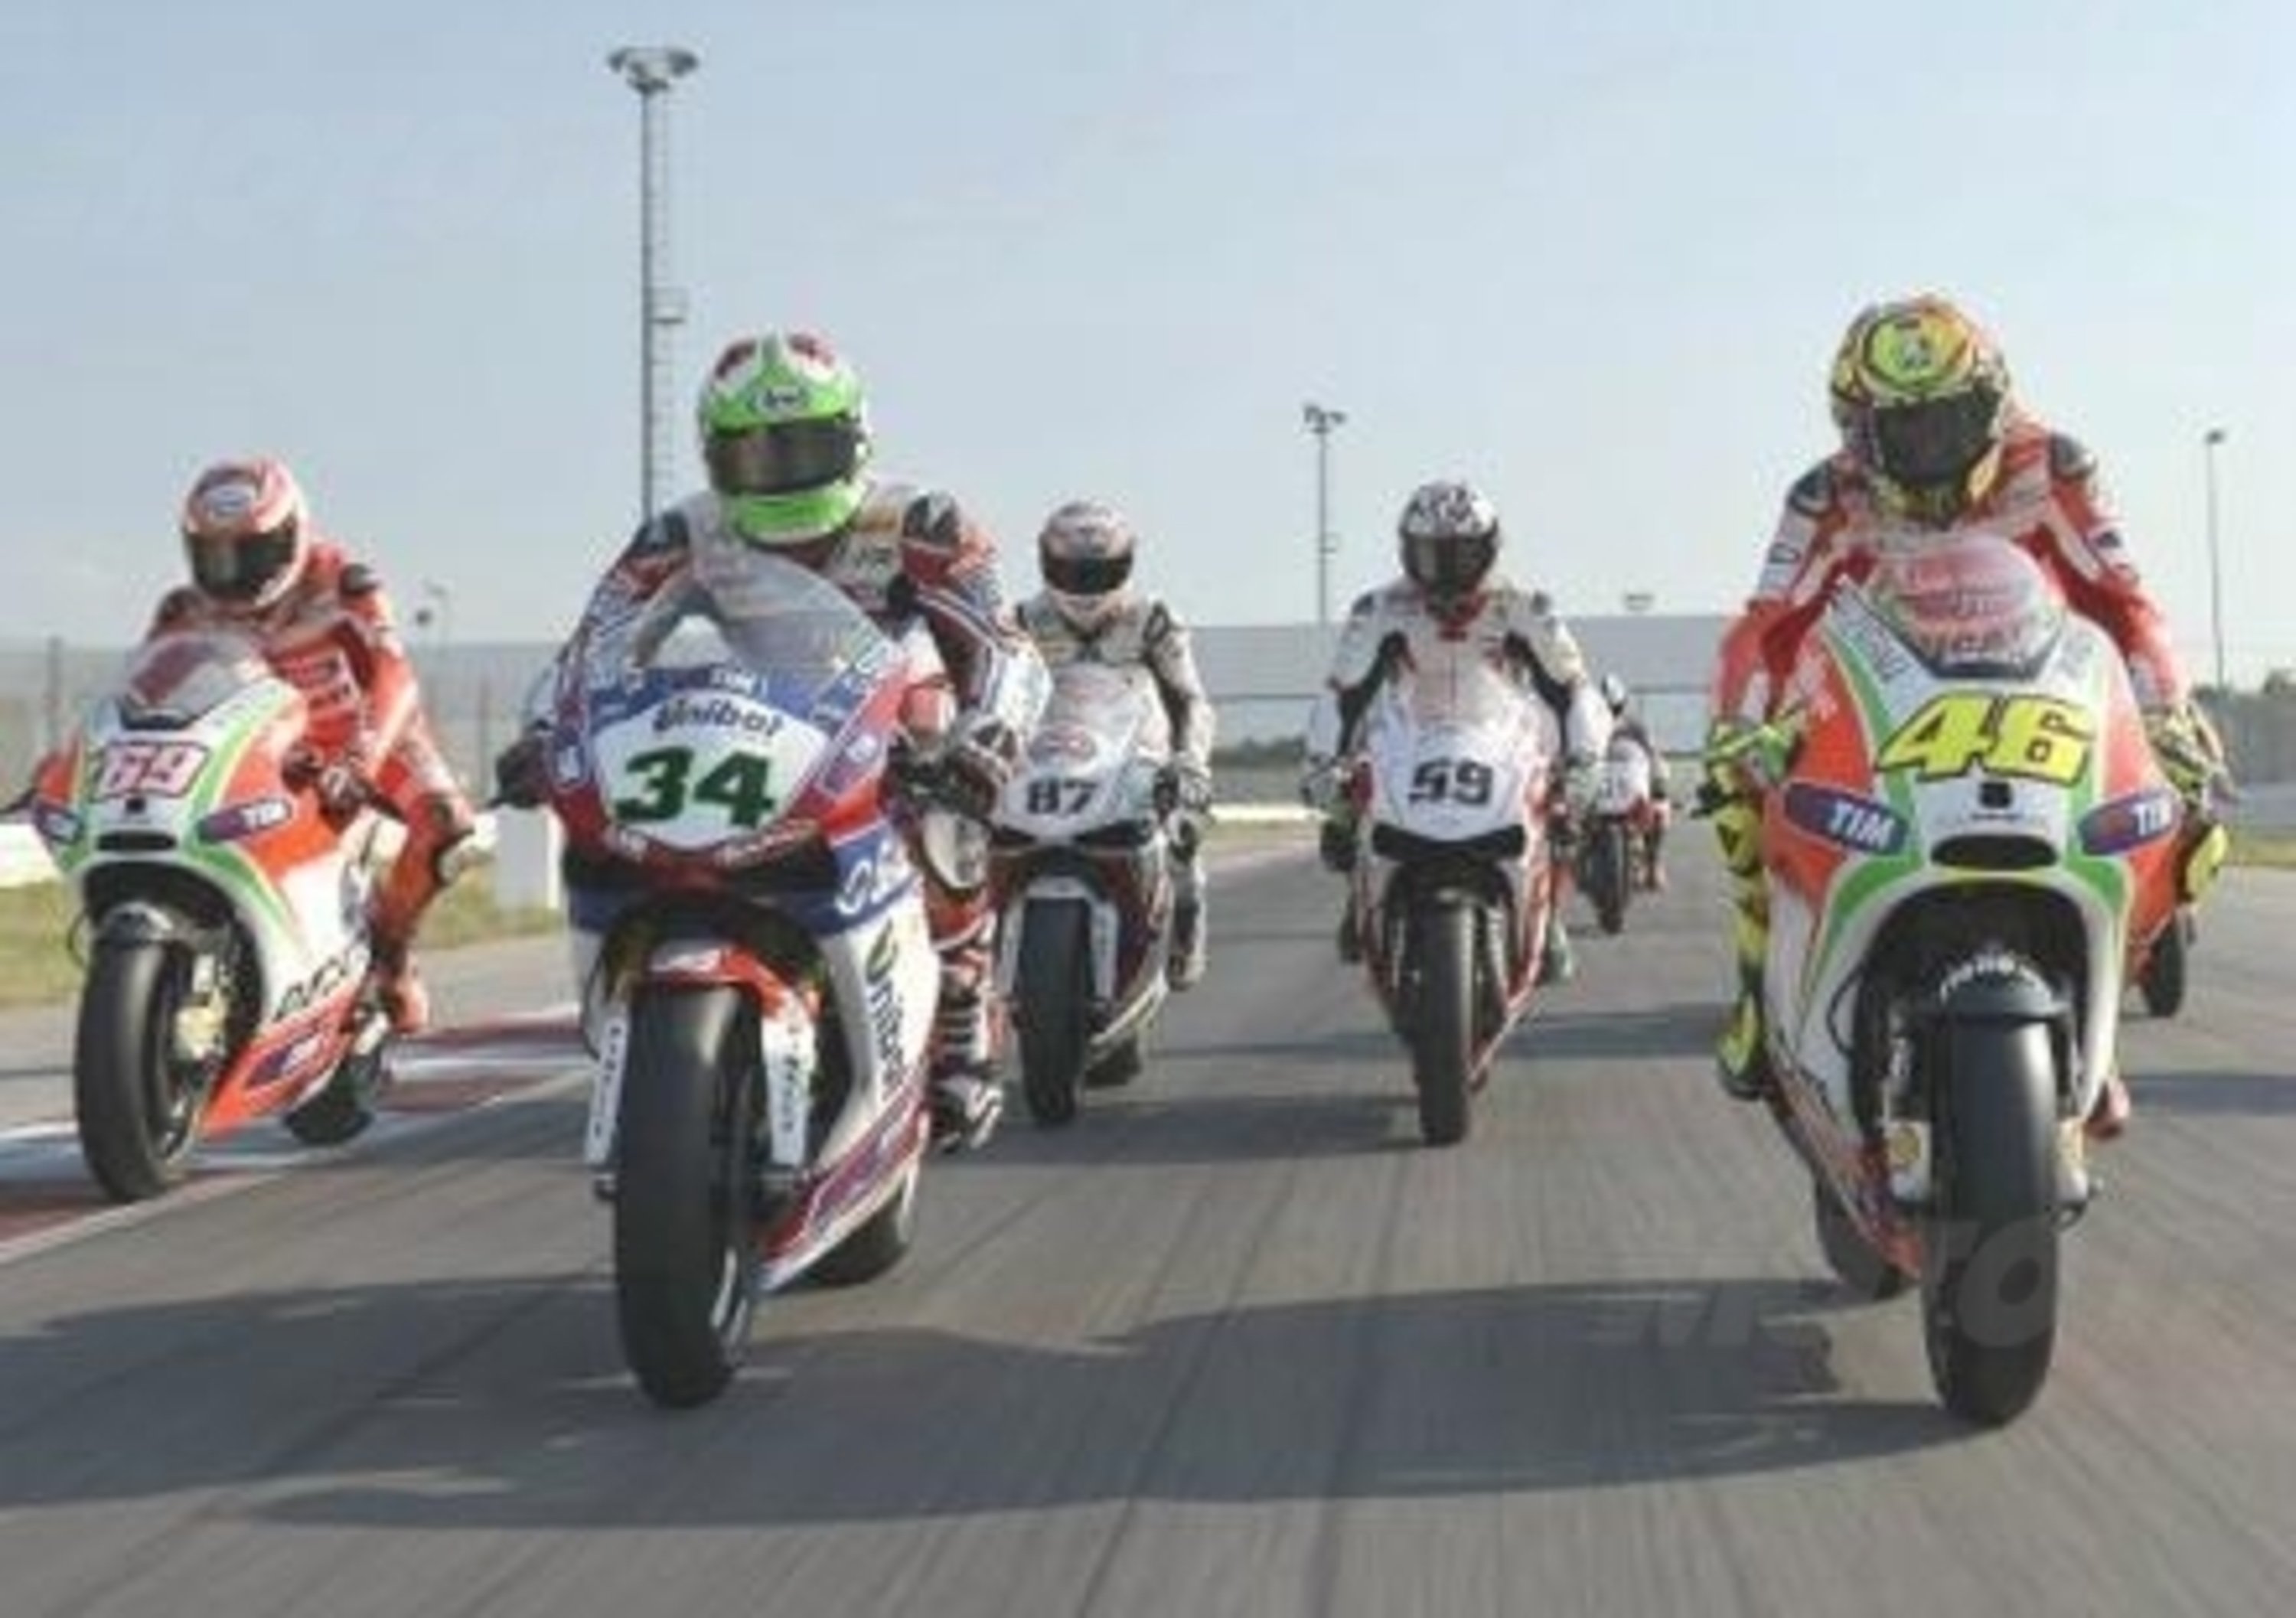 Dorna Sport gestir&agrave; anche la SBK oltre alla MotoGP